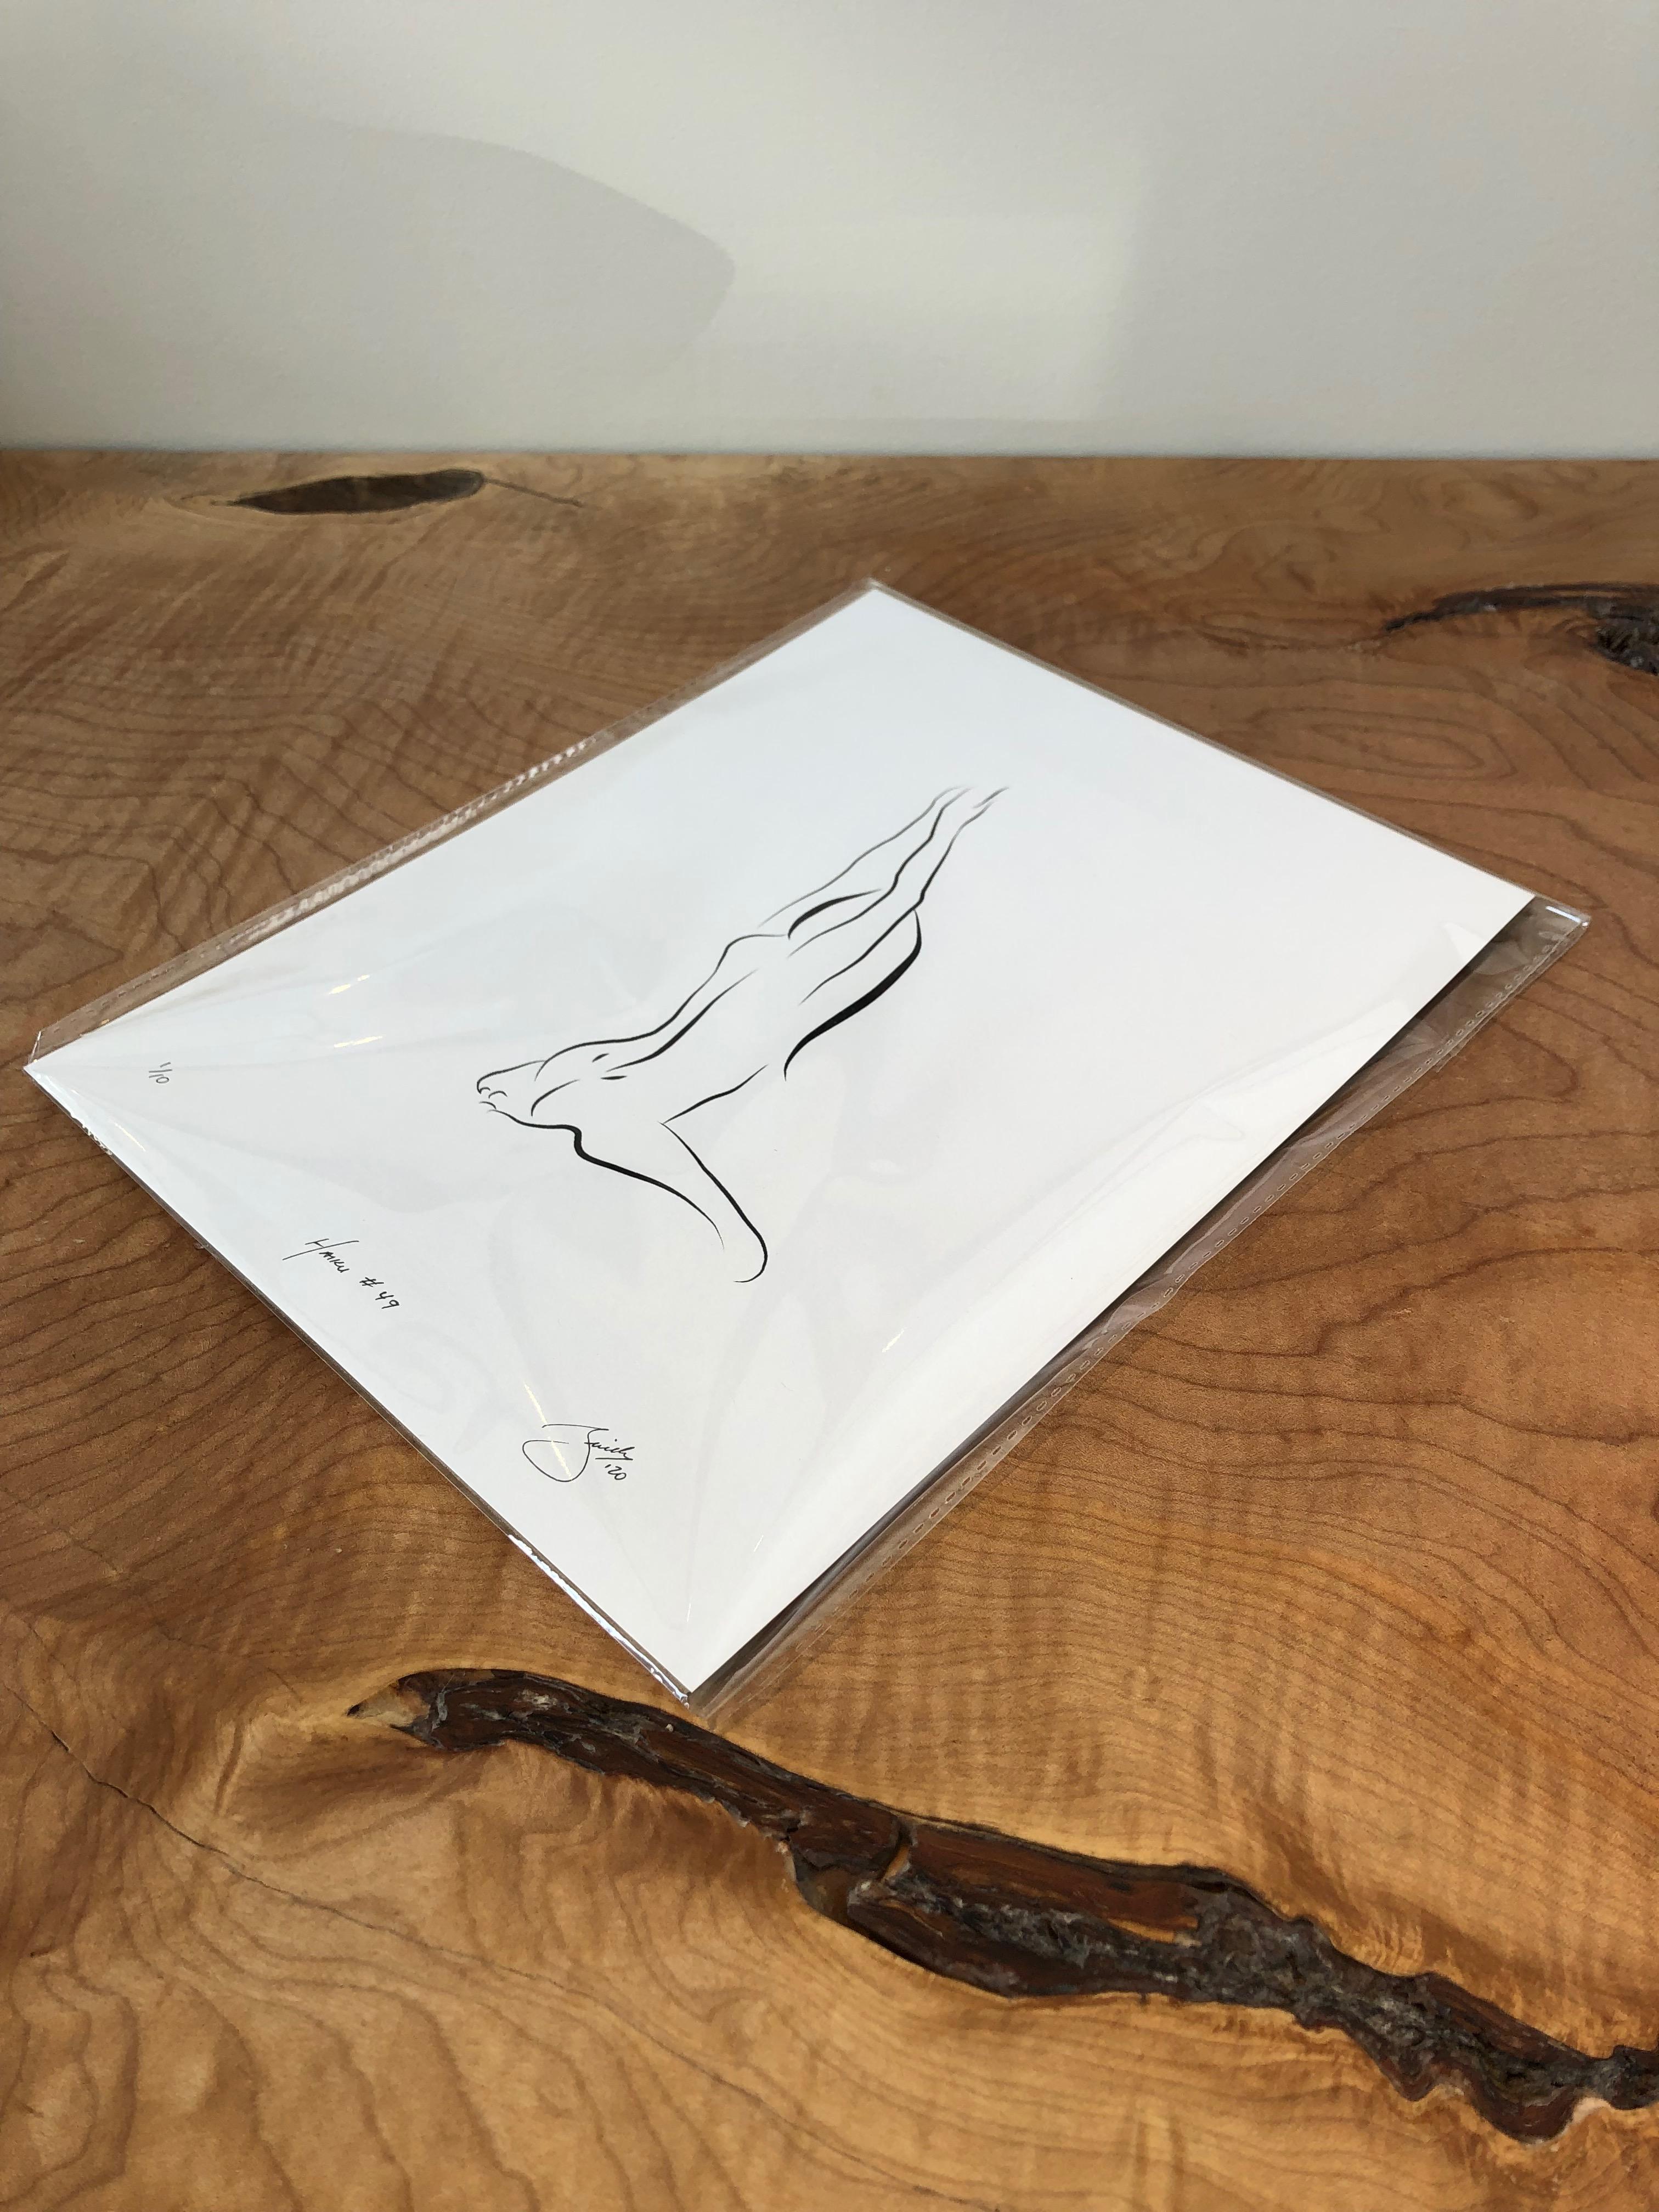 Haiku #49, 1/50 - Digital Vector Drawing Kneeling Female Nude Woman Figure - Print by Michael Binkley